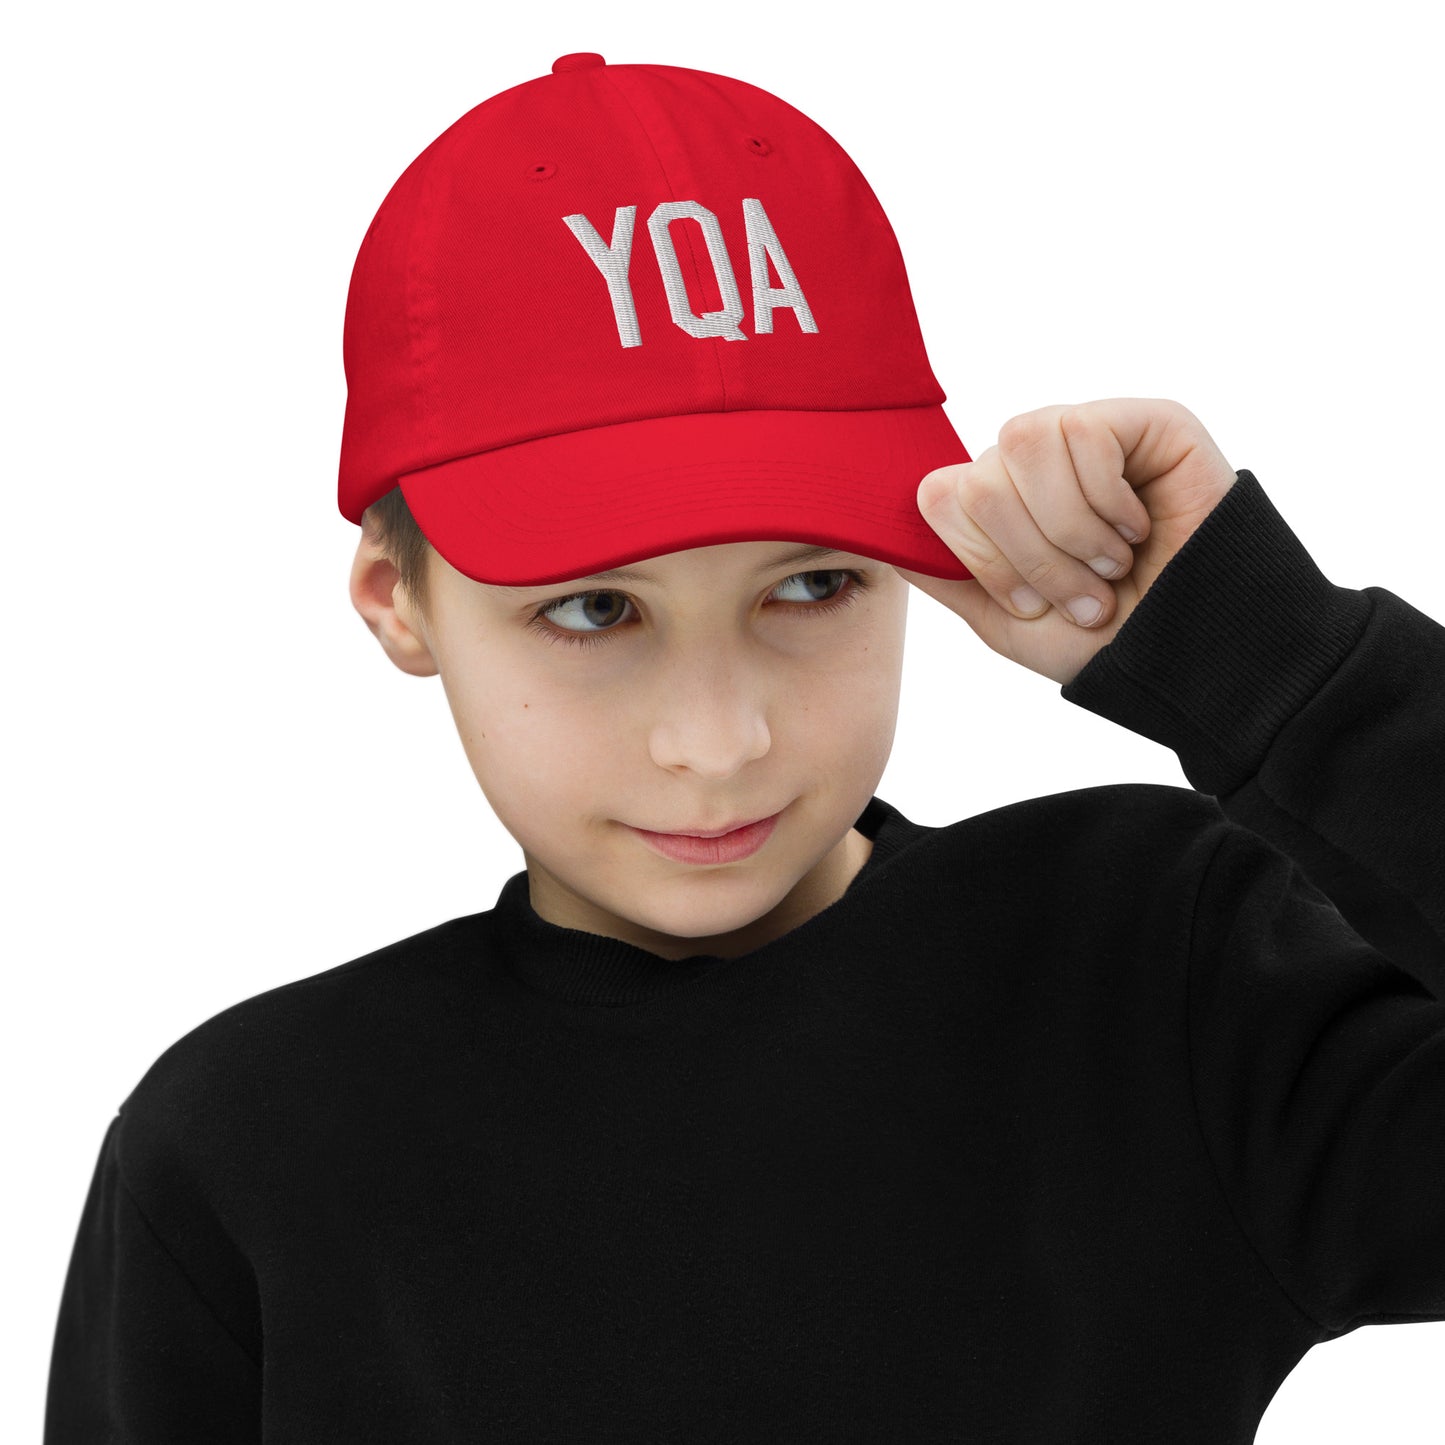 Airport Code Kid's Baseball Cap - White • YQA Muskoka • YHM Designs - Image 04